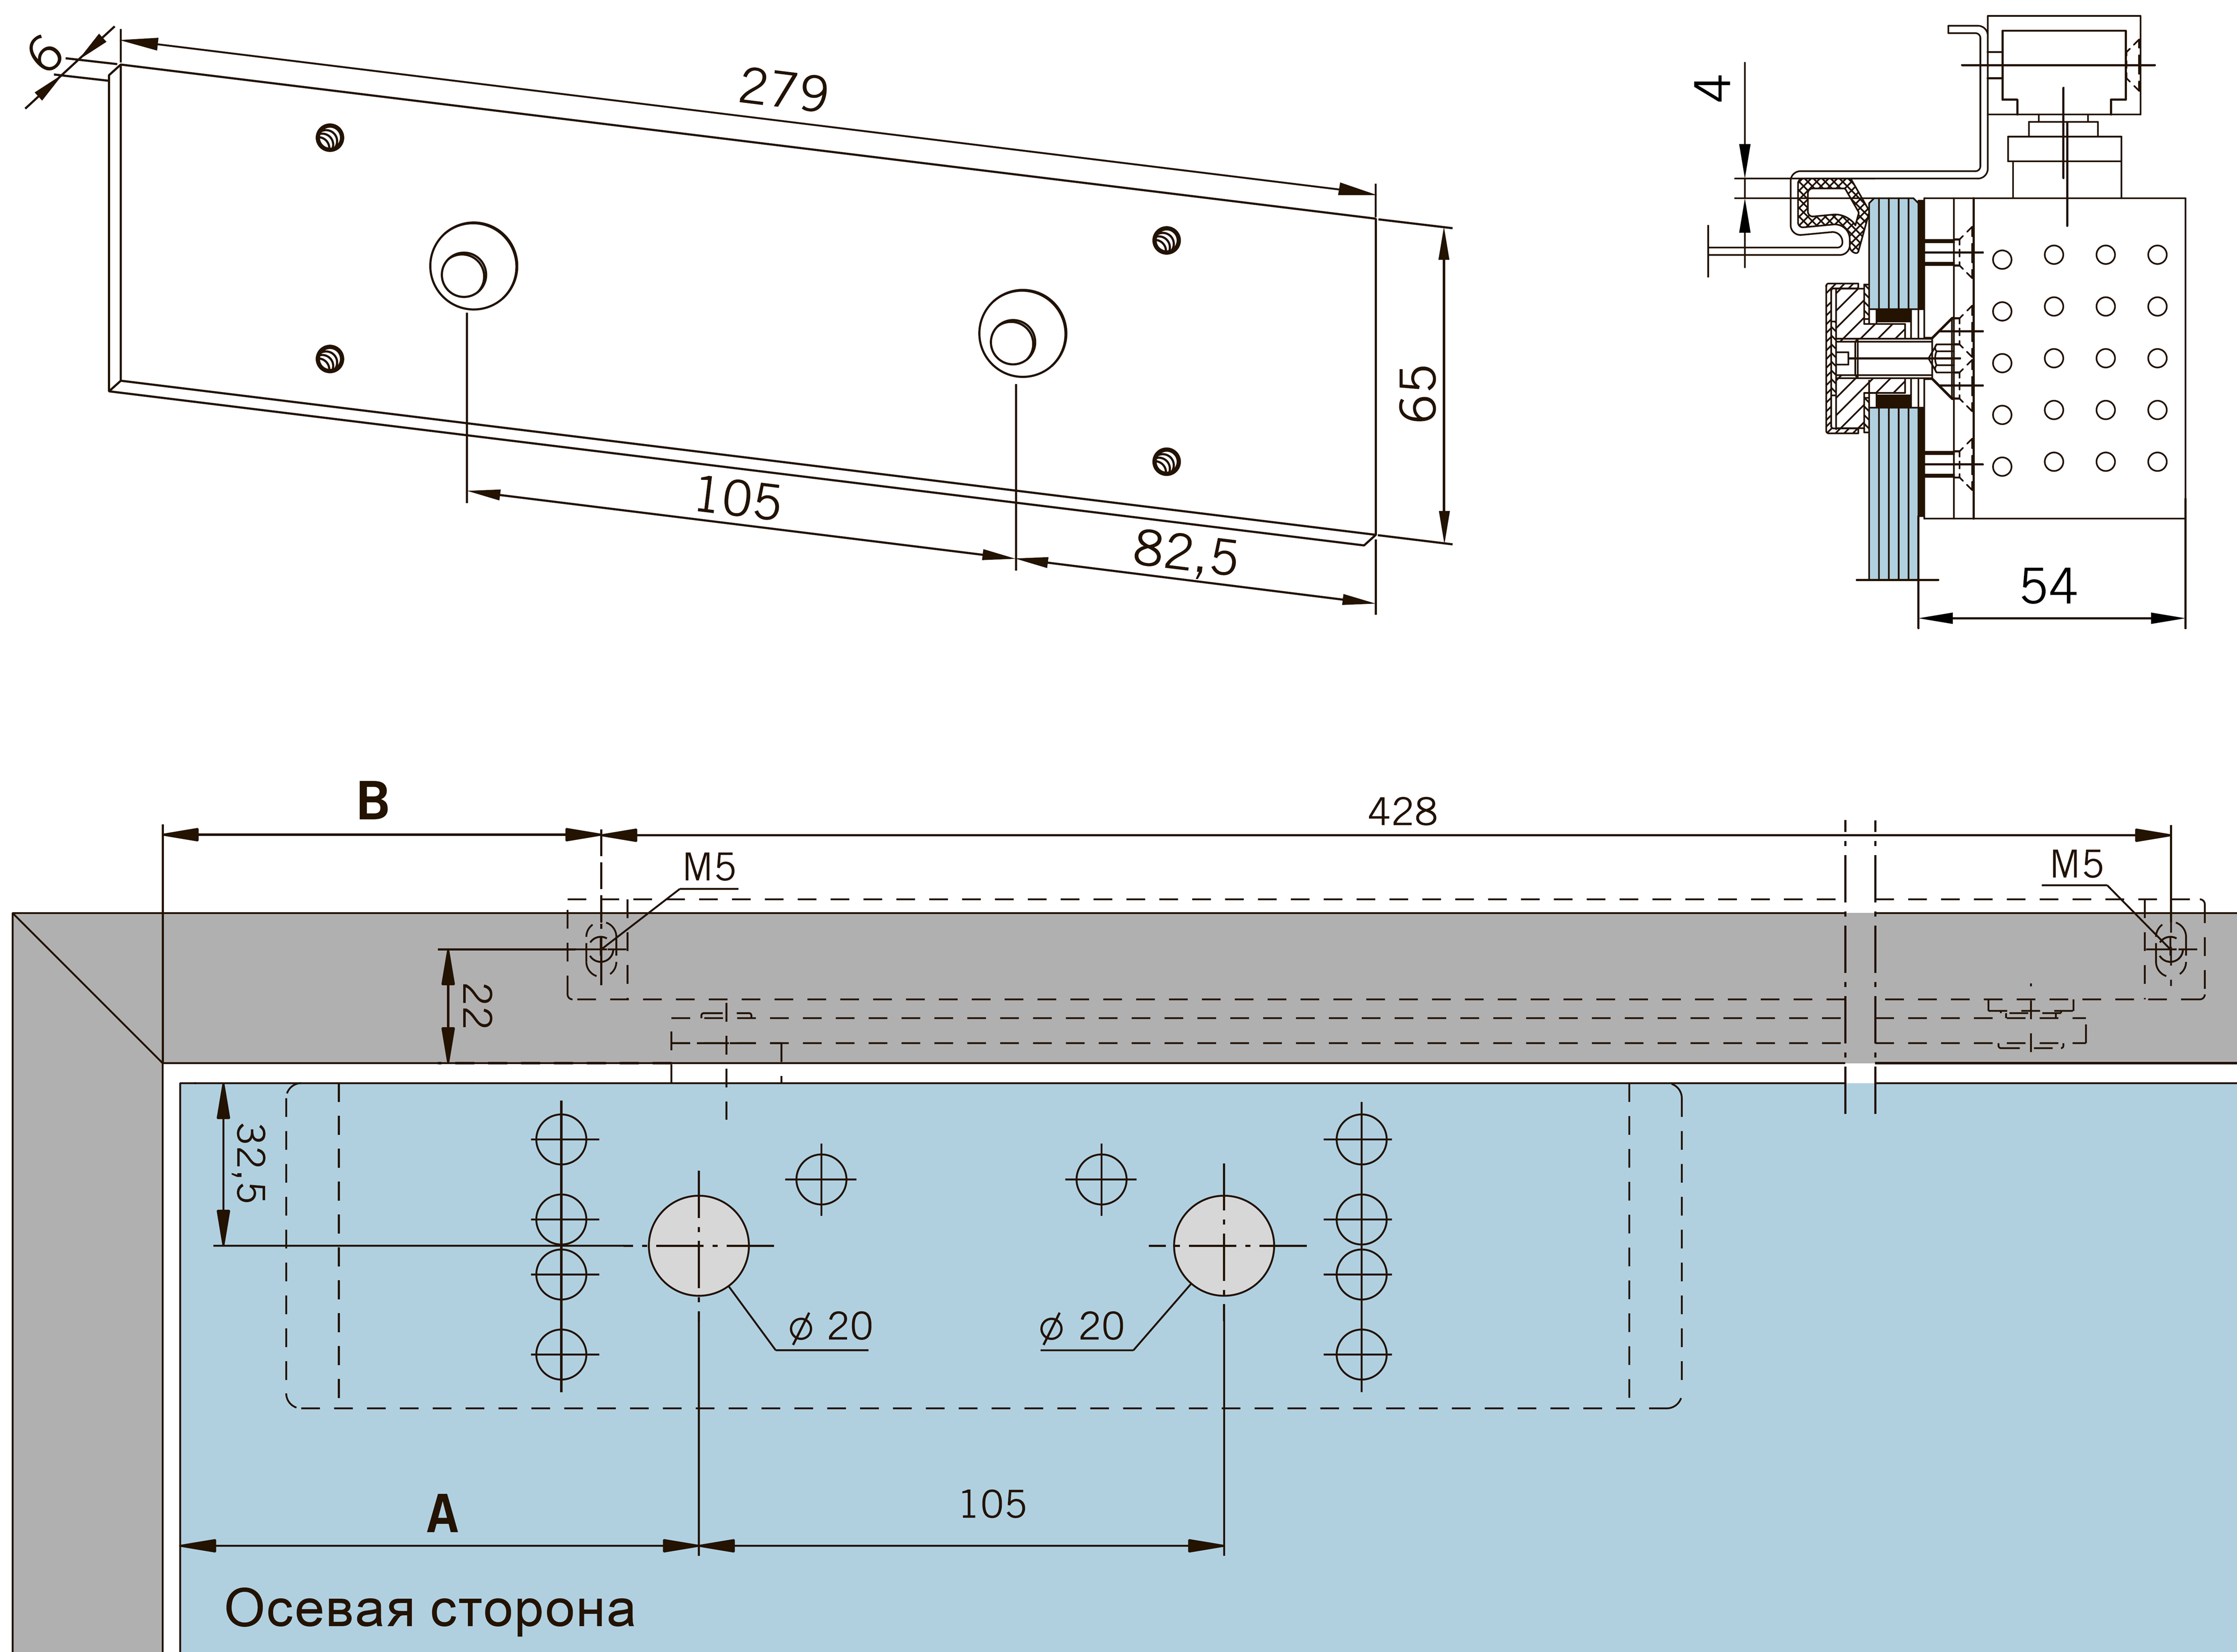 Размеры и способ крепления монтажной пластины для дверного доводчика TS 92 на стекло